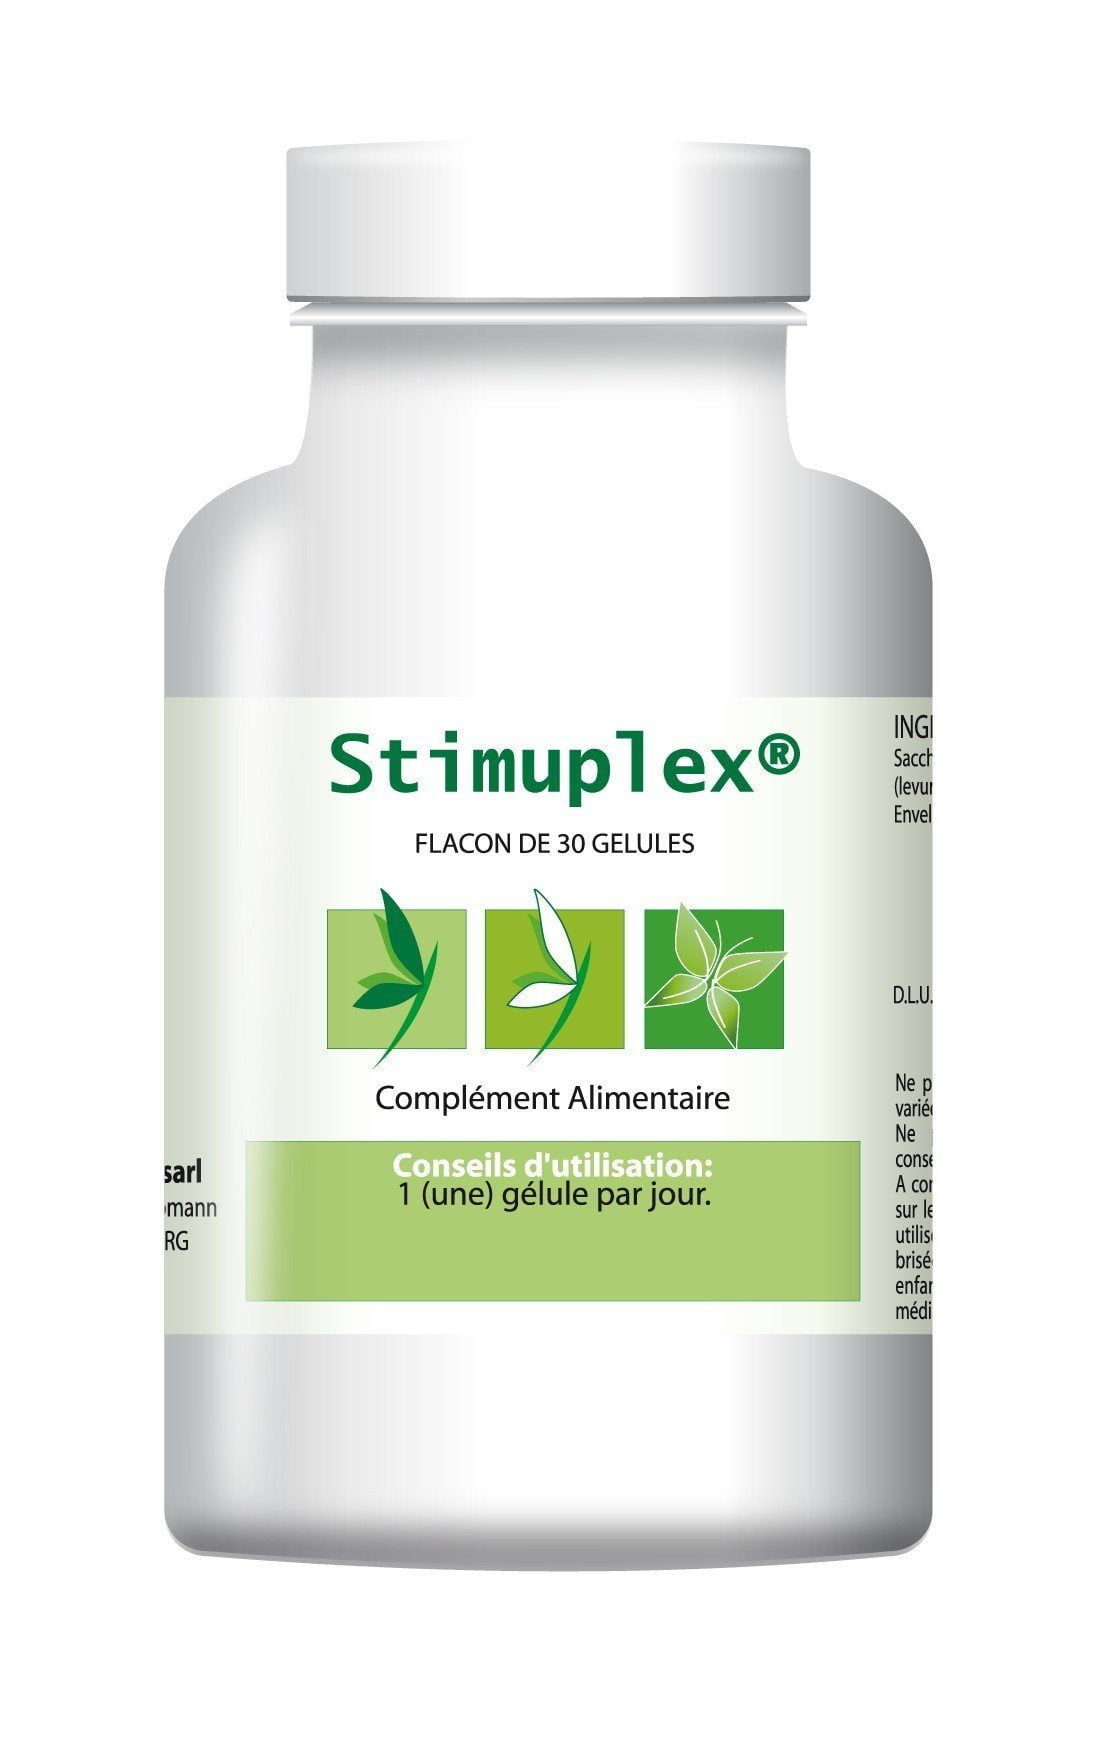 Stimuplex